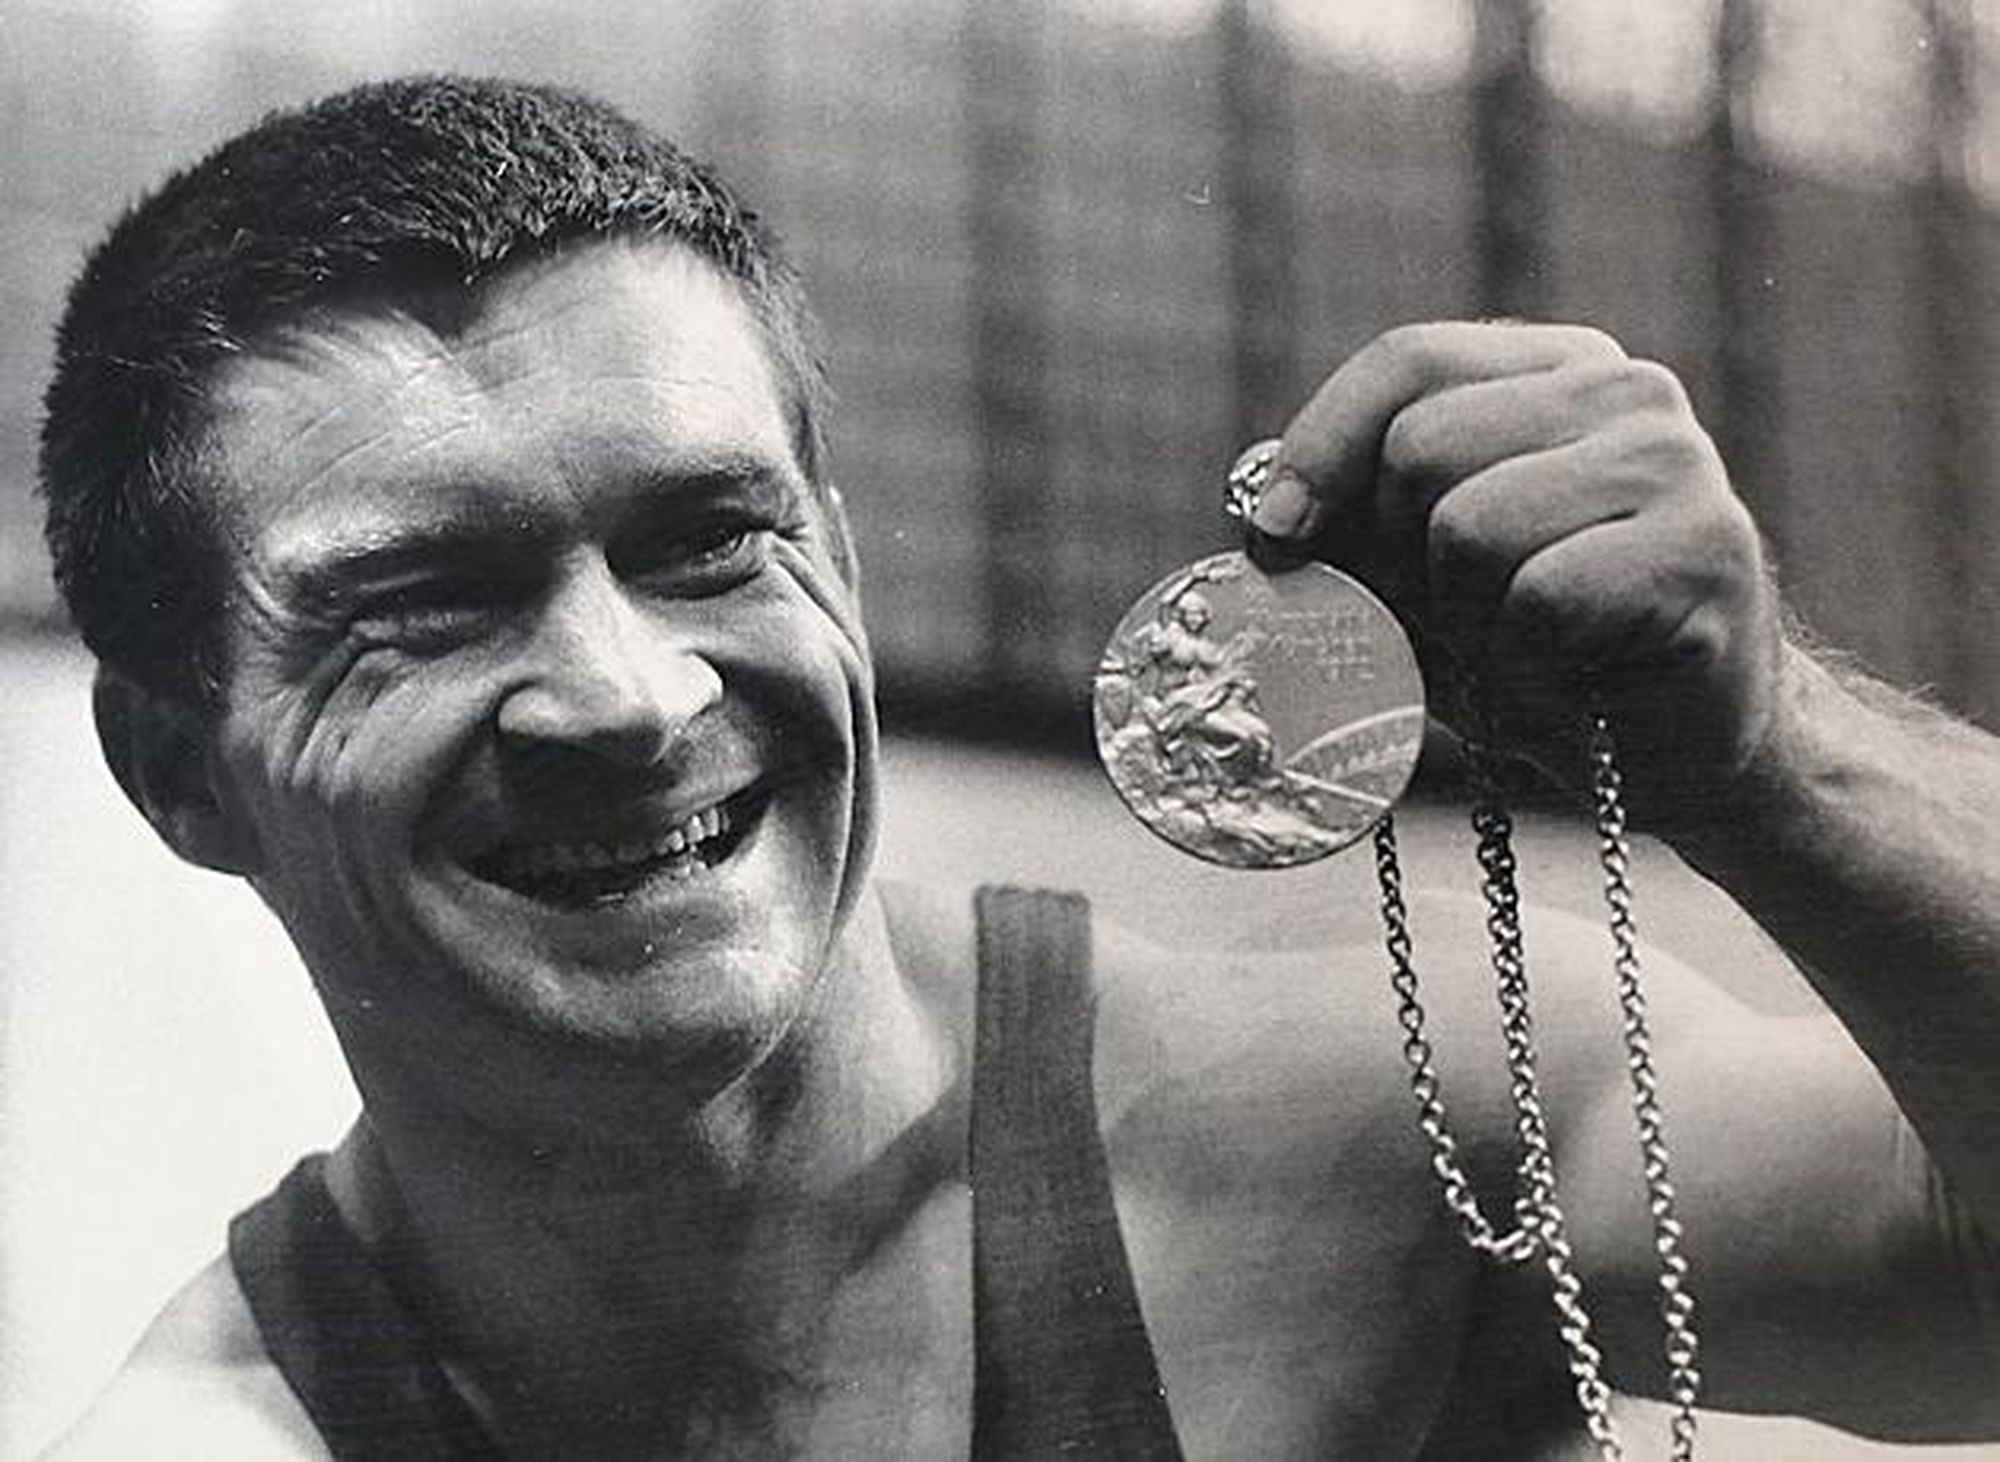 Földi Imre, a Nemzet Sportolója címmel kitüntetett olimpiai bajnok súlyemelő, edző